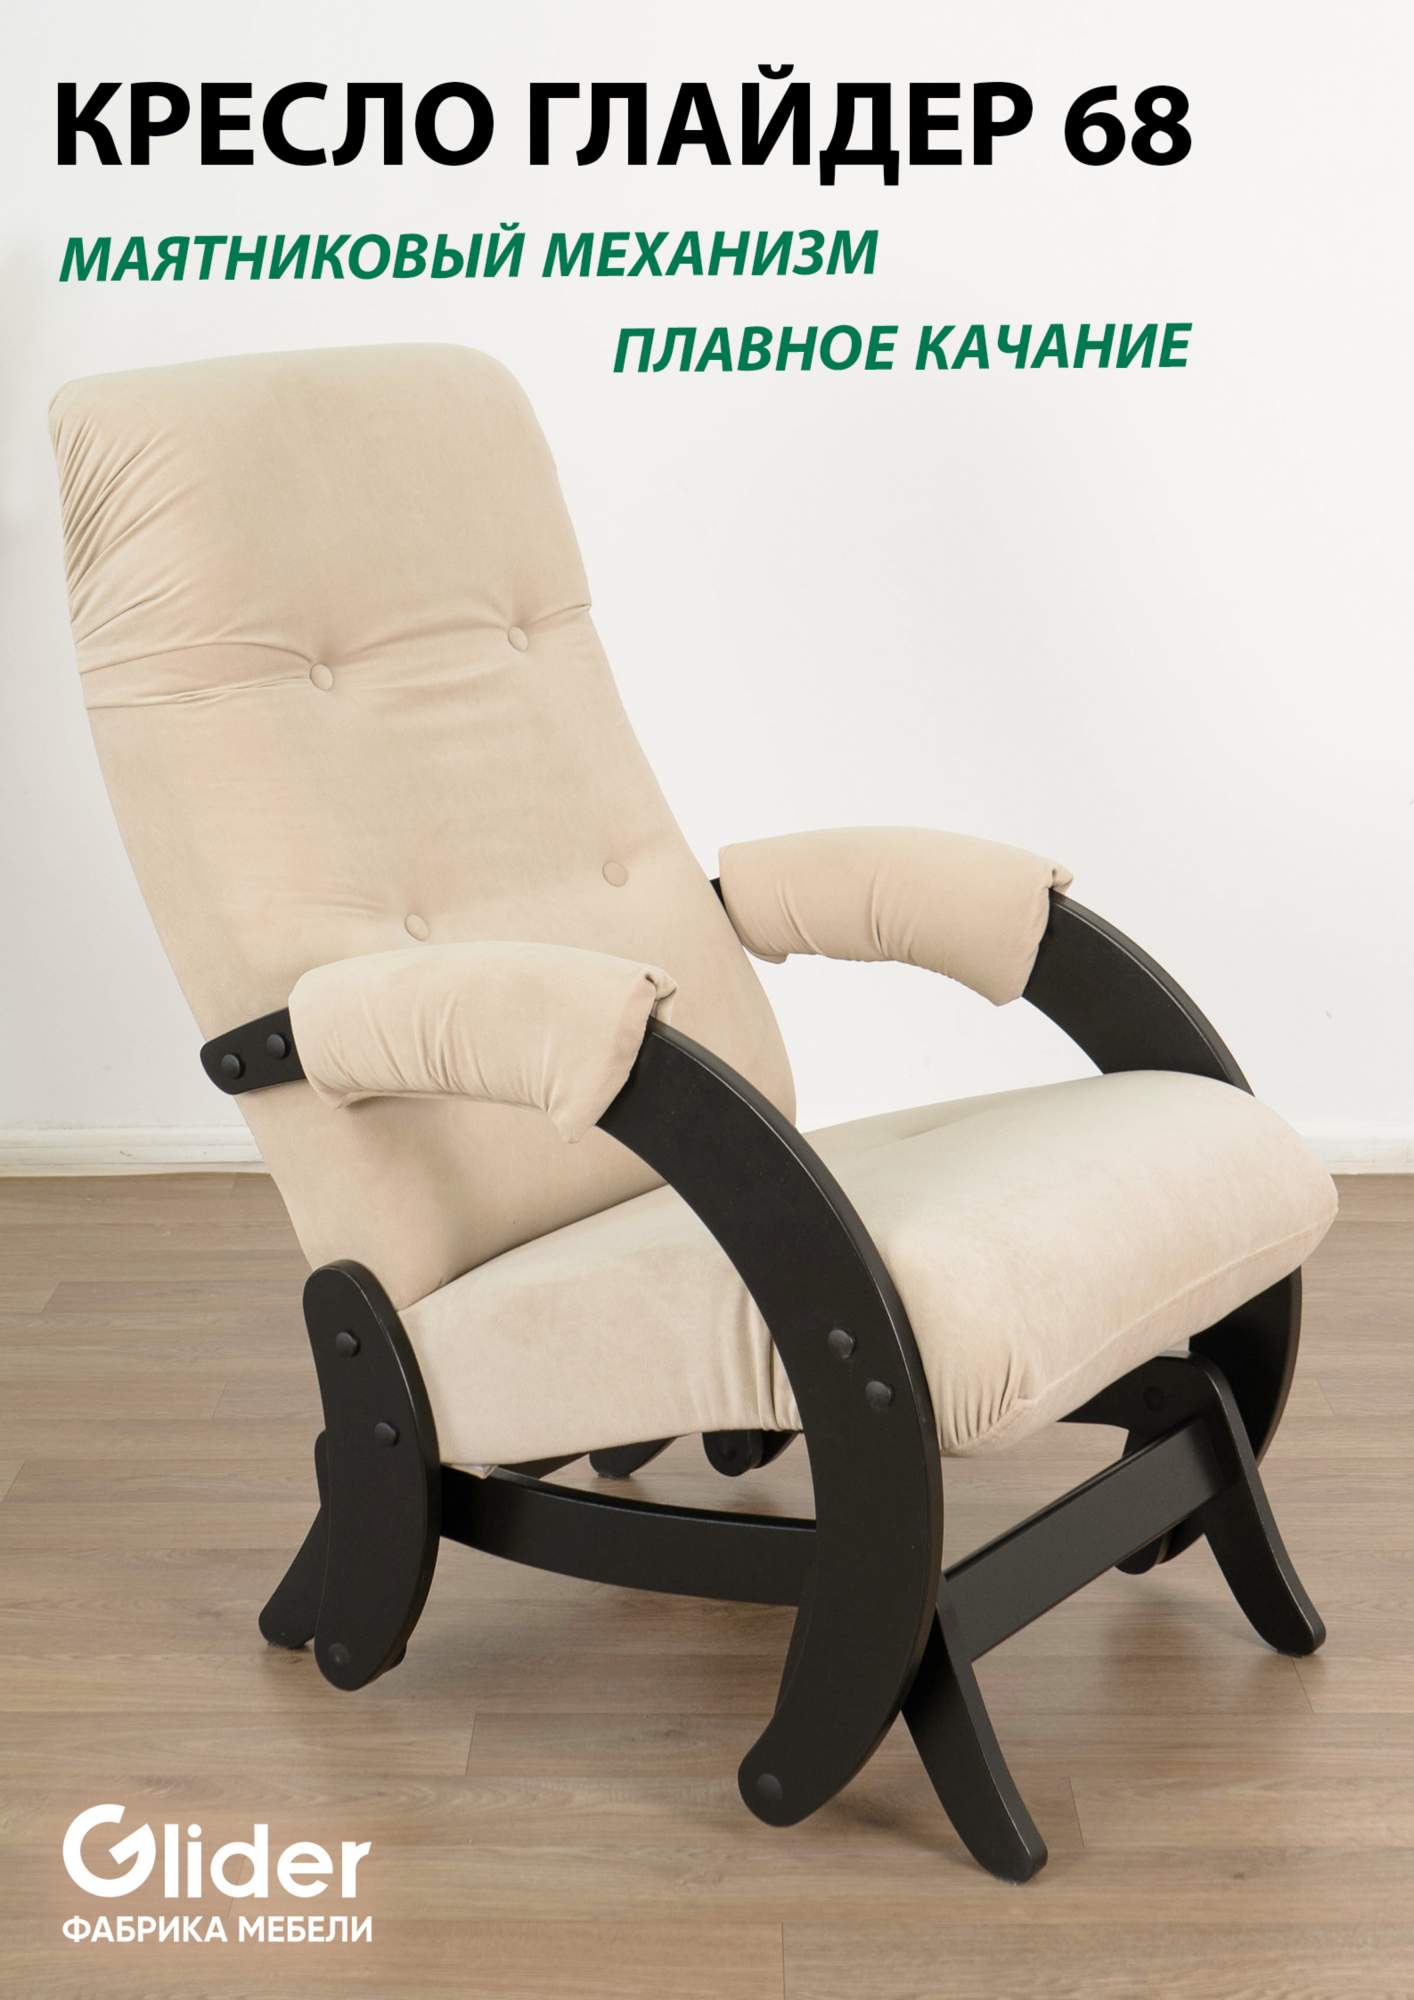 Кресло-качалка с маятниковым механизмом Glider 68 - купить в Москве, цены на Мегамаркет | 600012355610